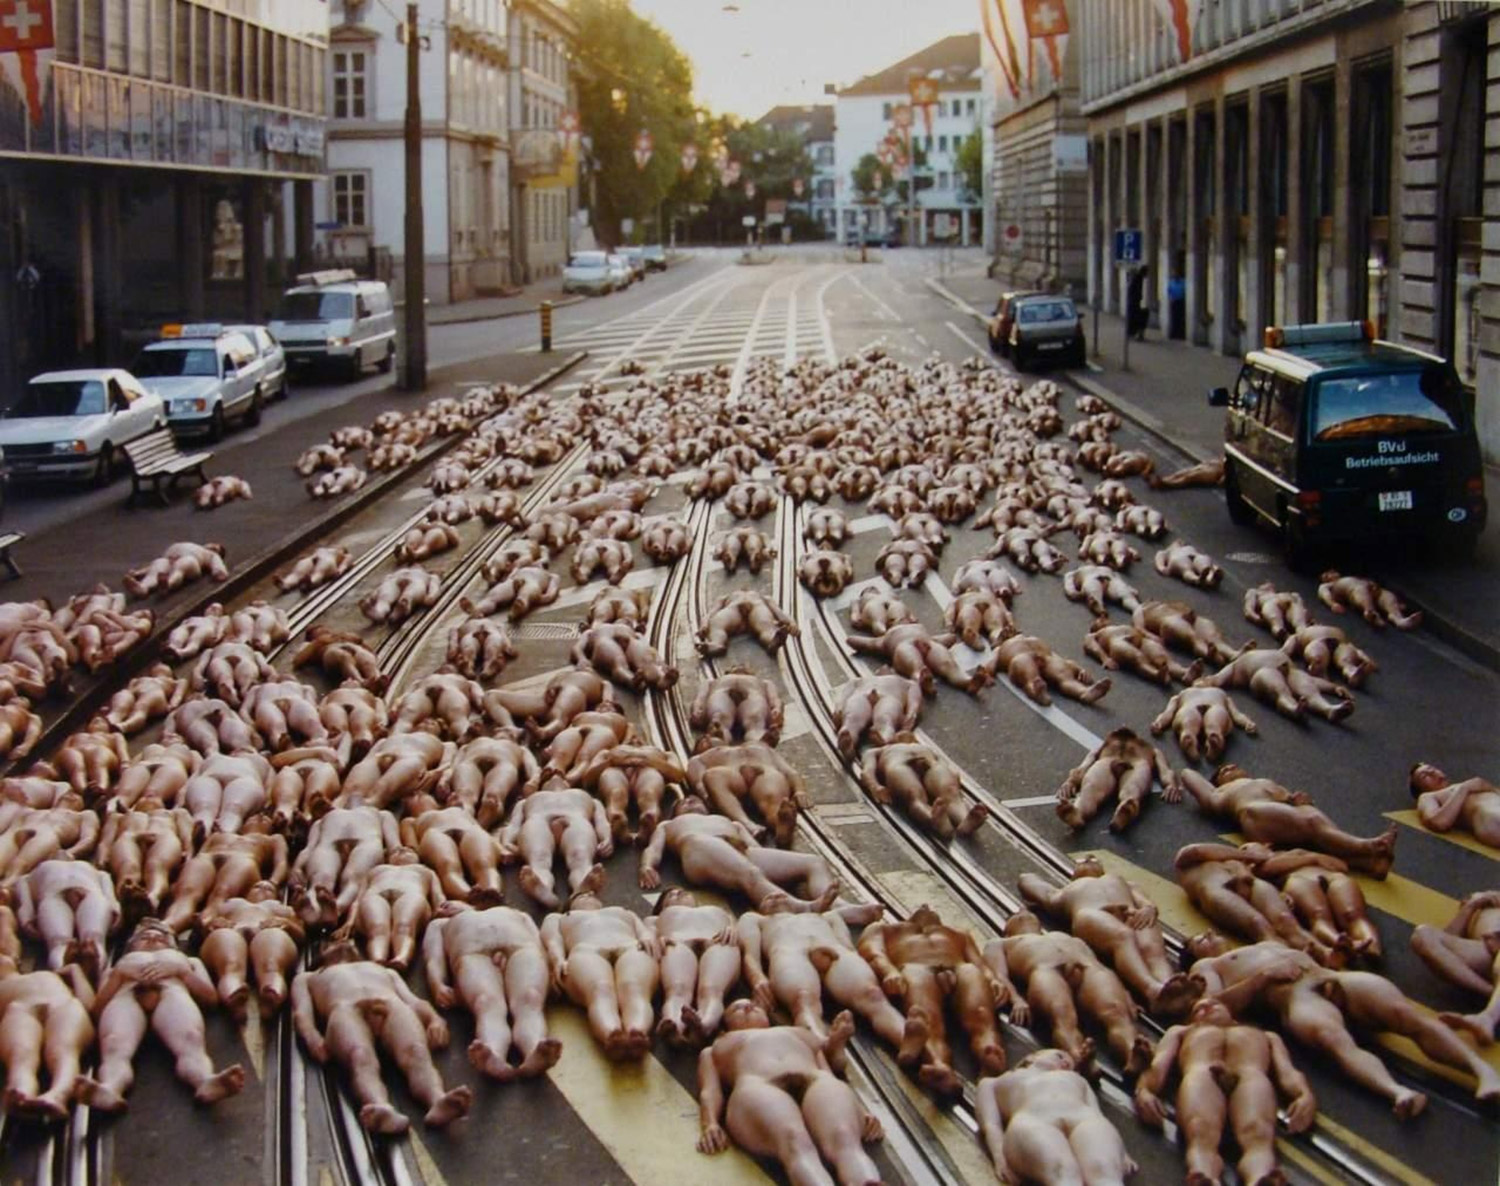 Nude crowds